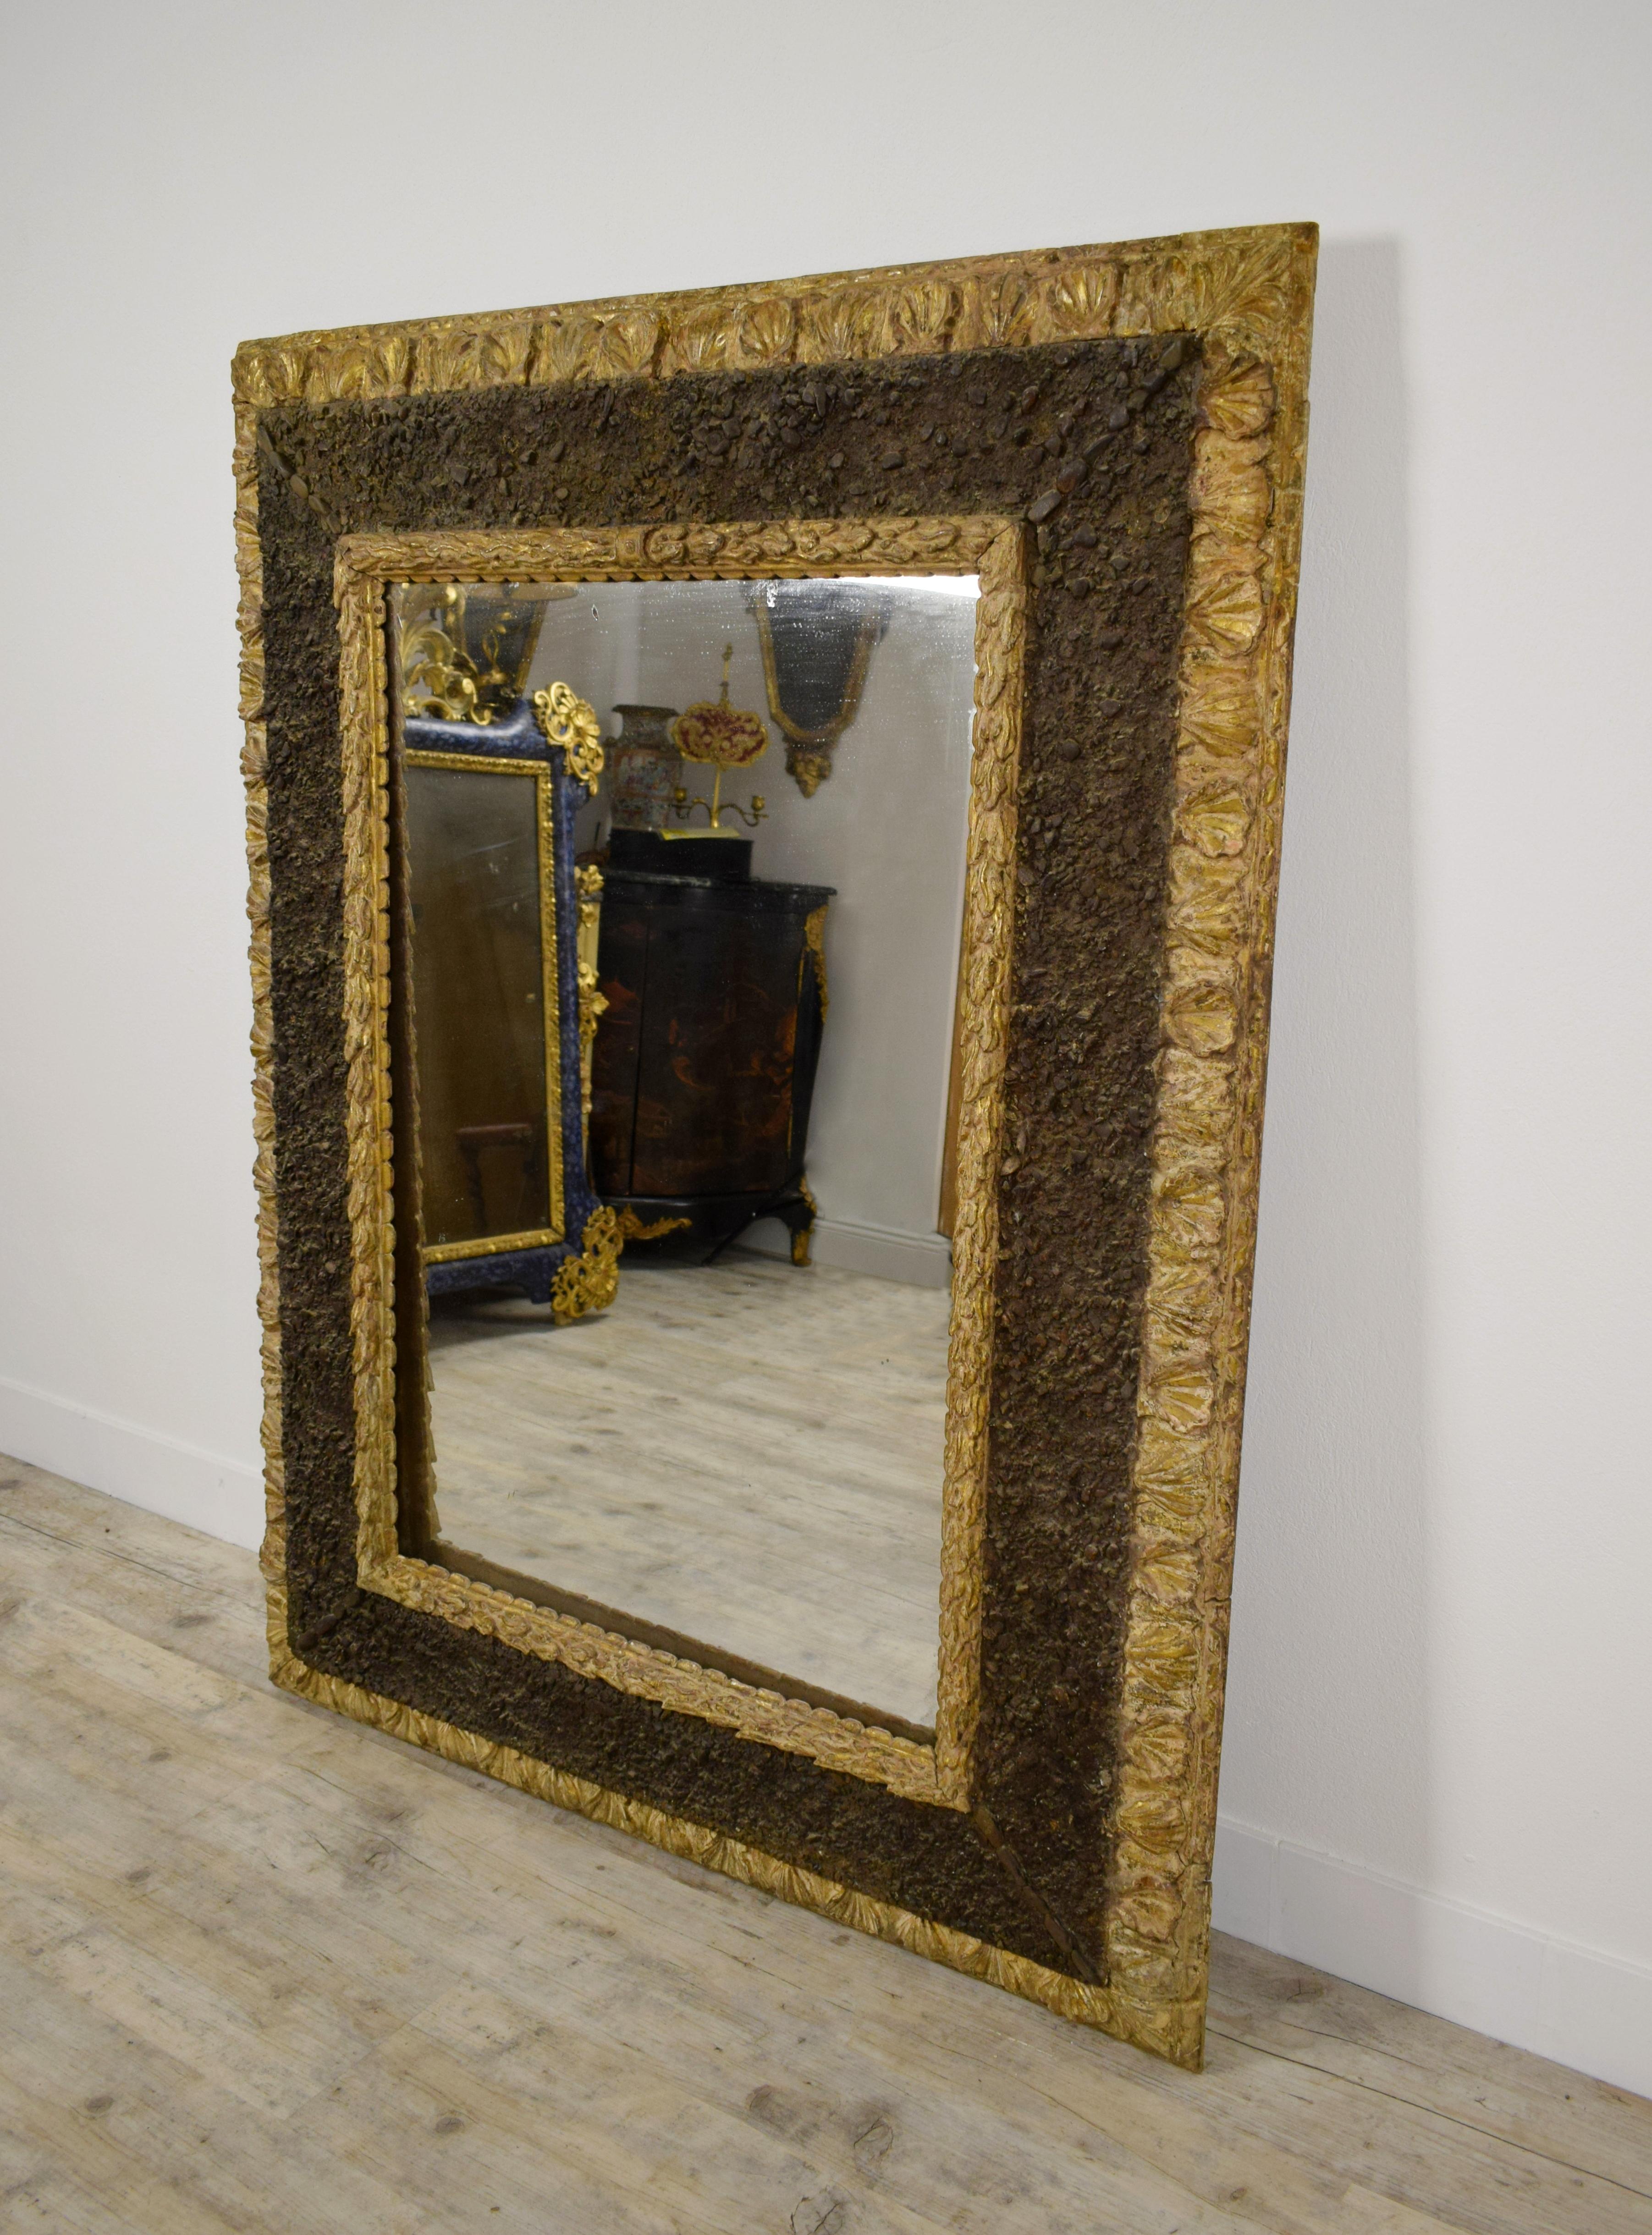 17. Jahrhundert, italienischer geschnitzter Vergoldungsspiegel mit kleinen Steinen

Dieser bedeutende Spiegel, der im 17. Jahrhundert in Italien hergestellt wurde, hat eine seltene, wenn nicht sogar einzigartige Verarbeitung. Der Holzrahmen ist